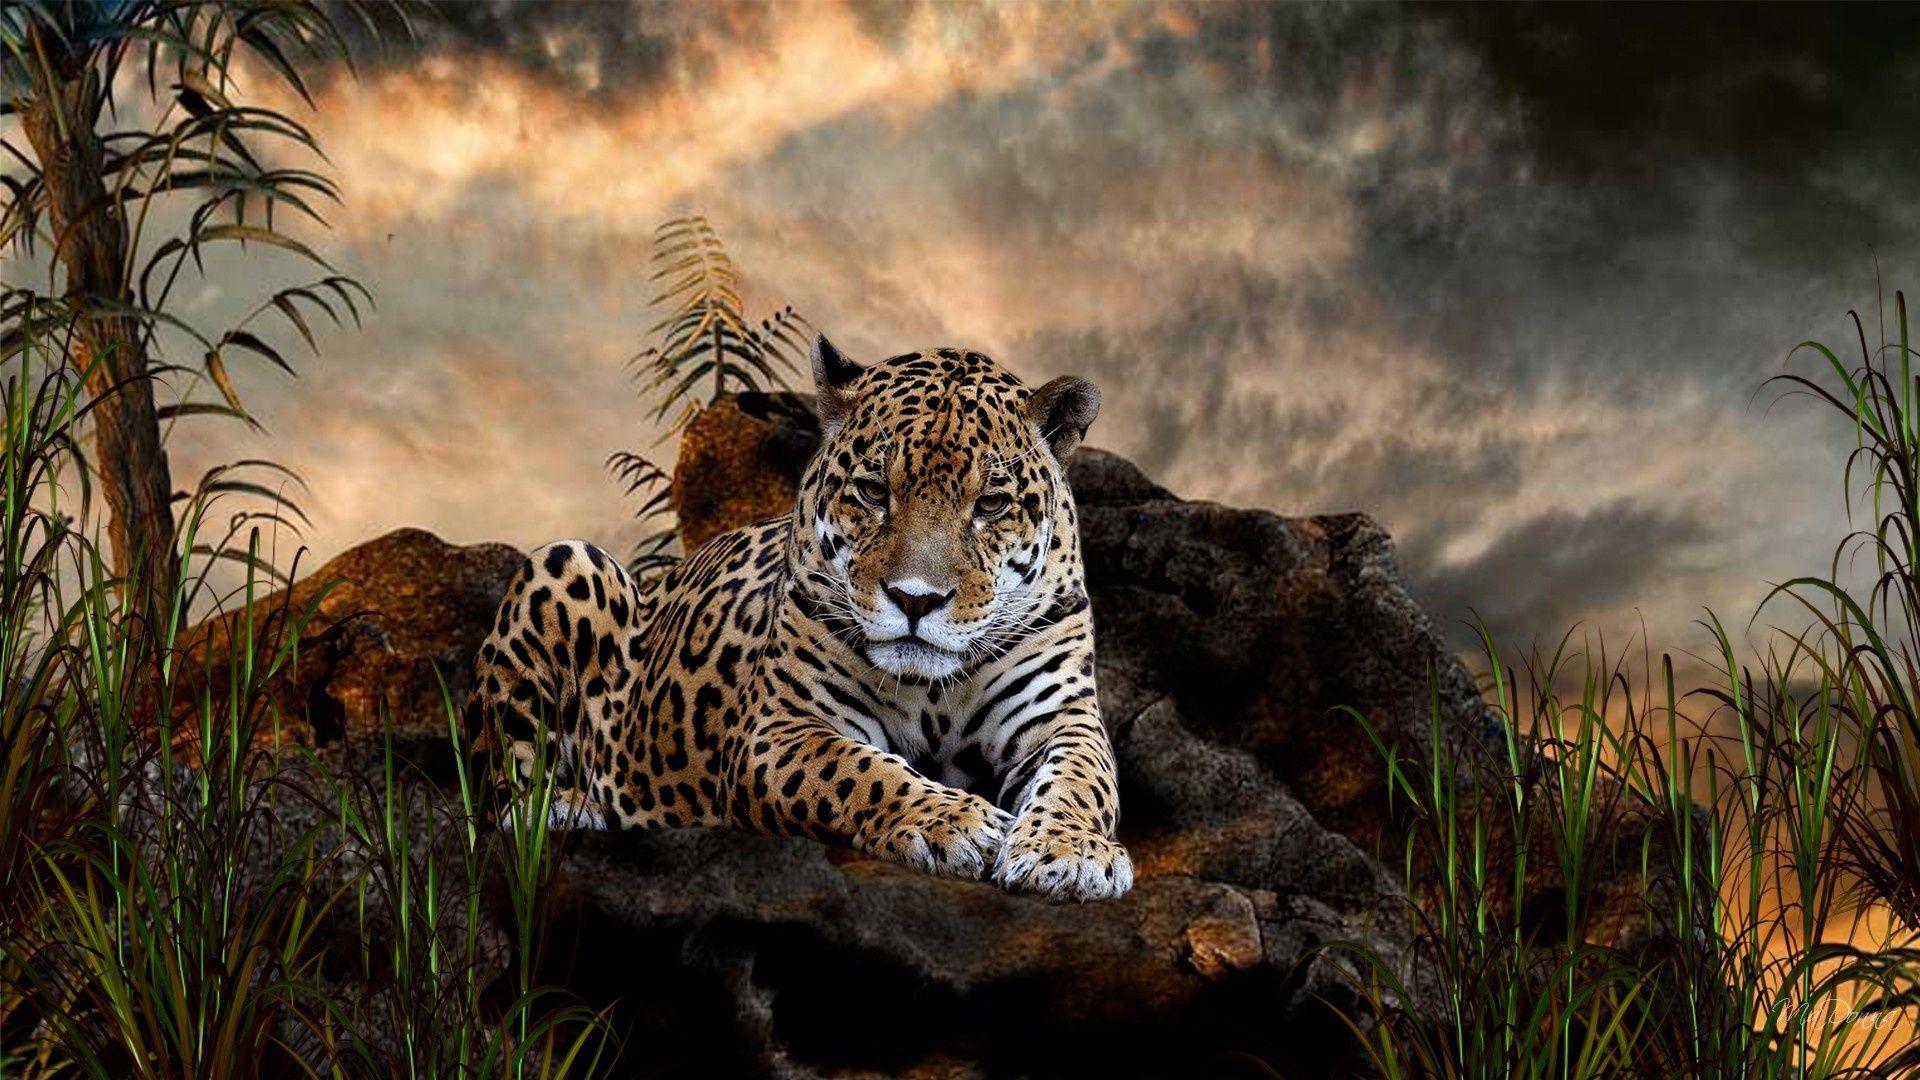 Wild Animals Wallpaper Wild Animals Modern 4K Ultra HD Image